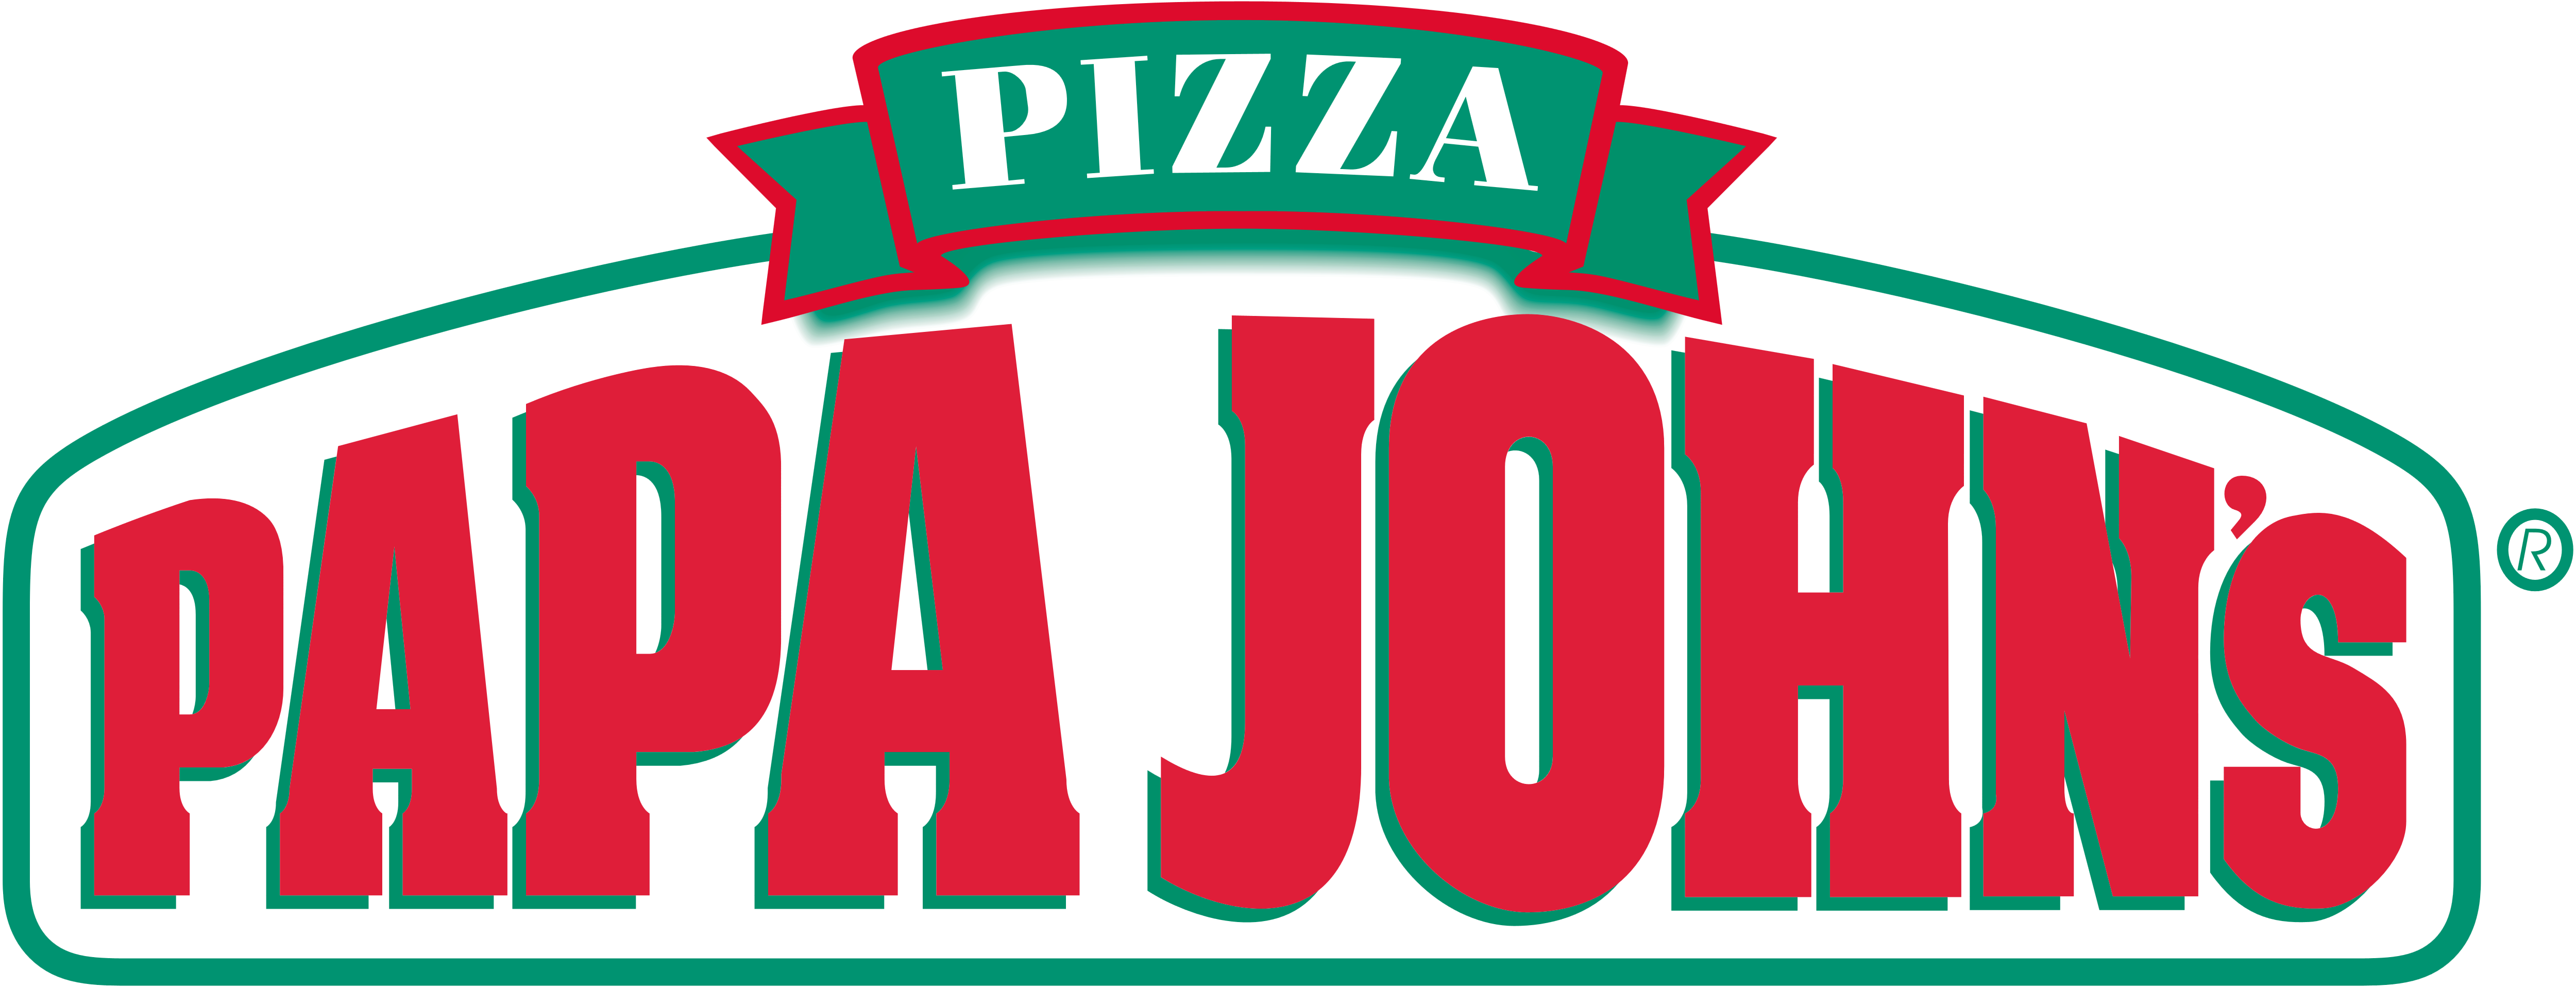 Download Papa John S Pizza Logos Download